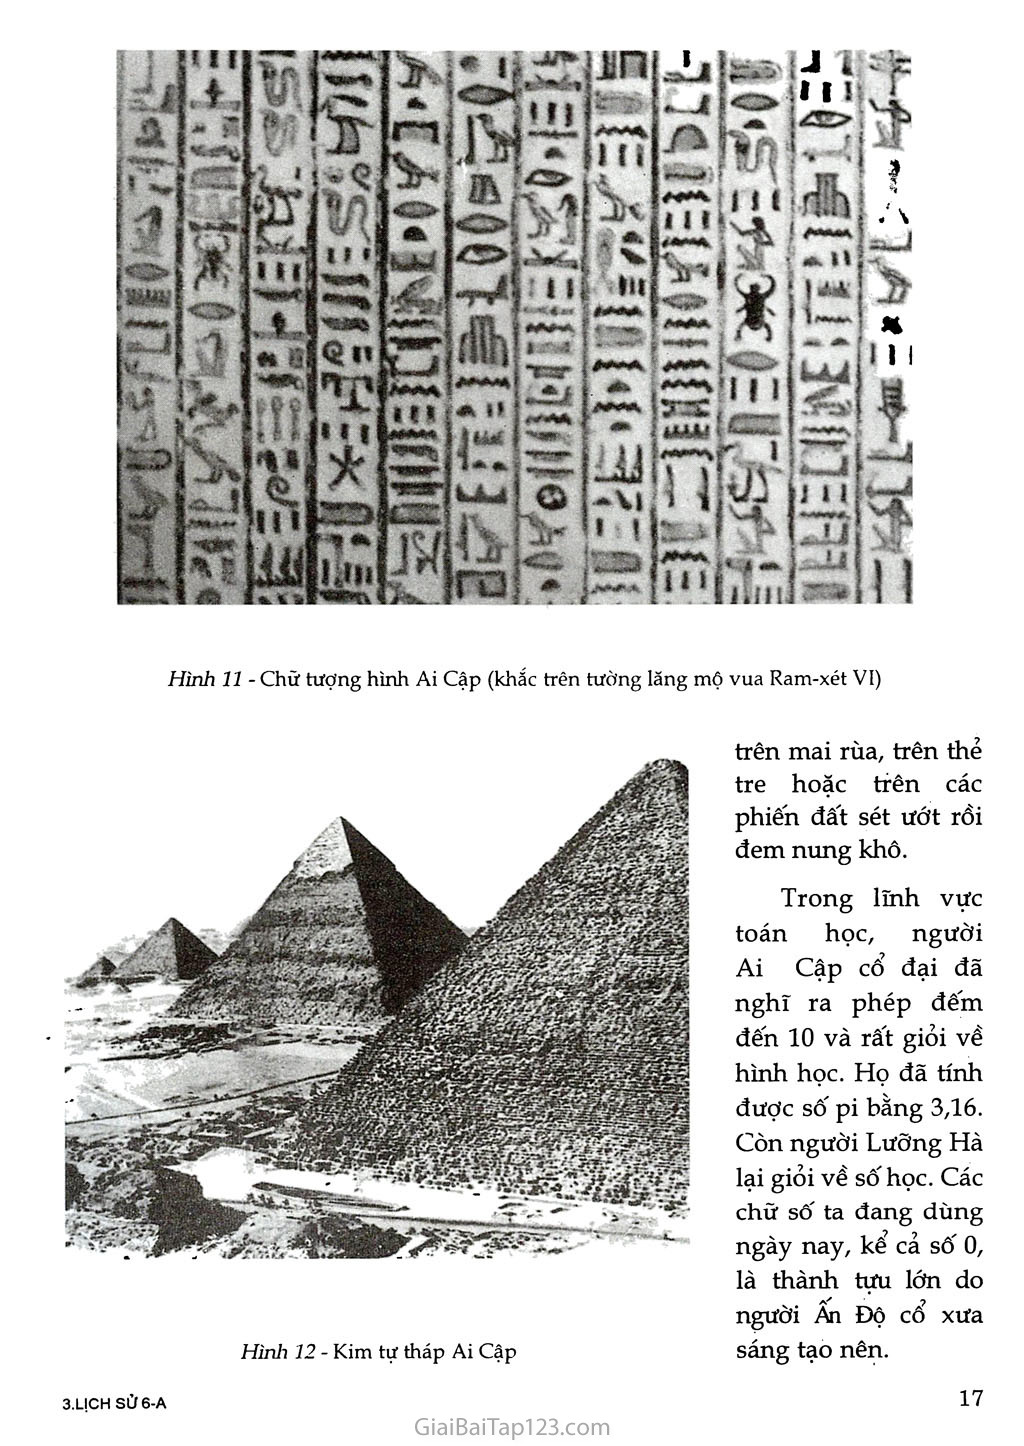 Bài 6 - Văn hóa cổ đại (1 tiết) trang 2